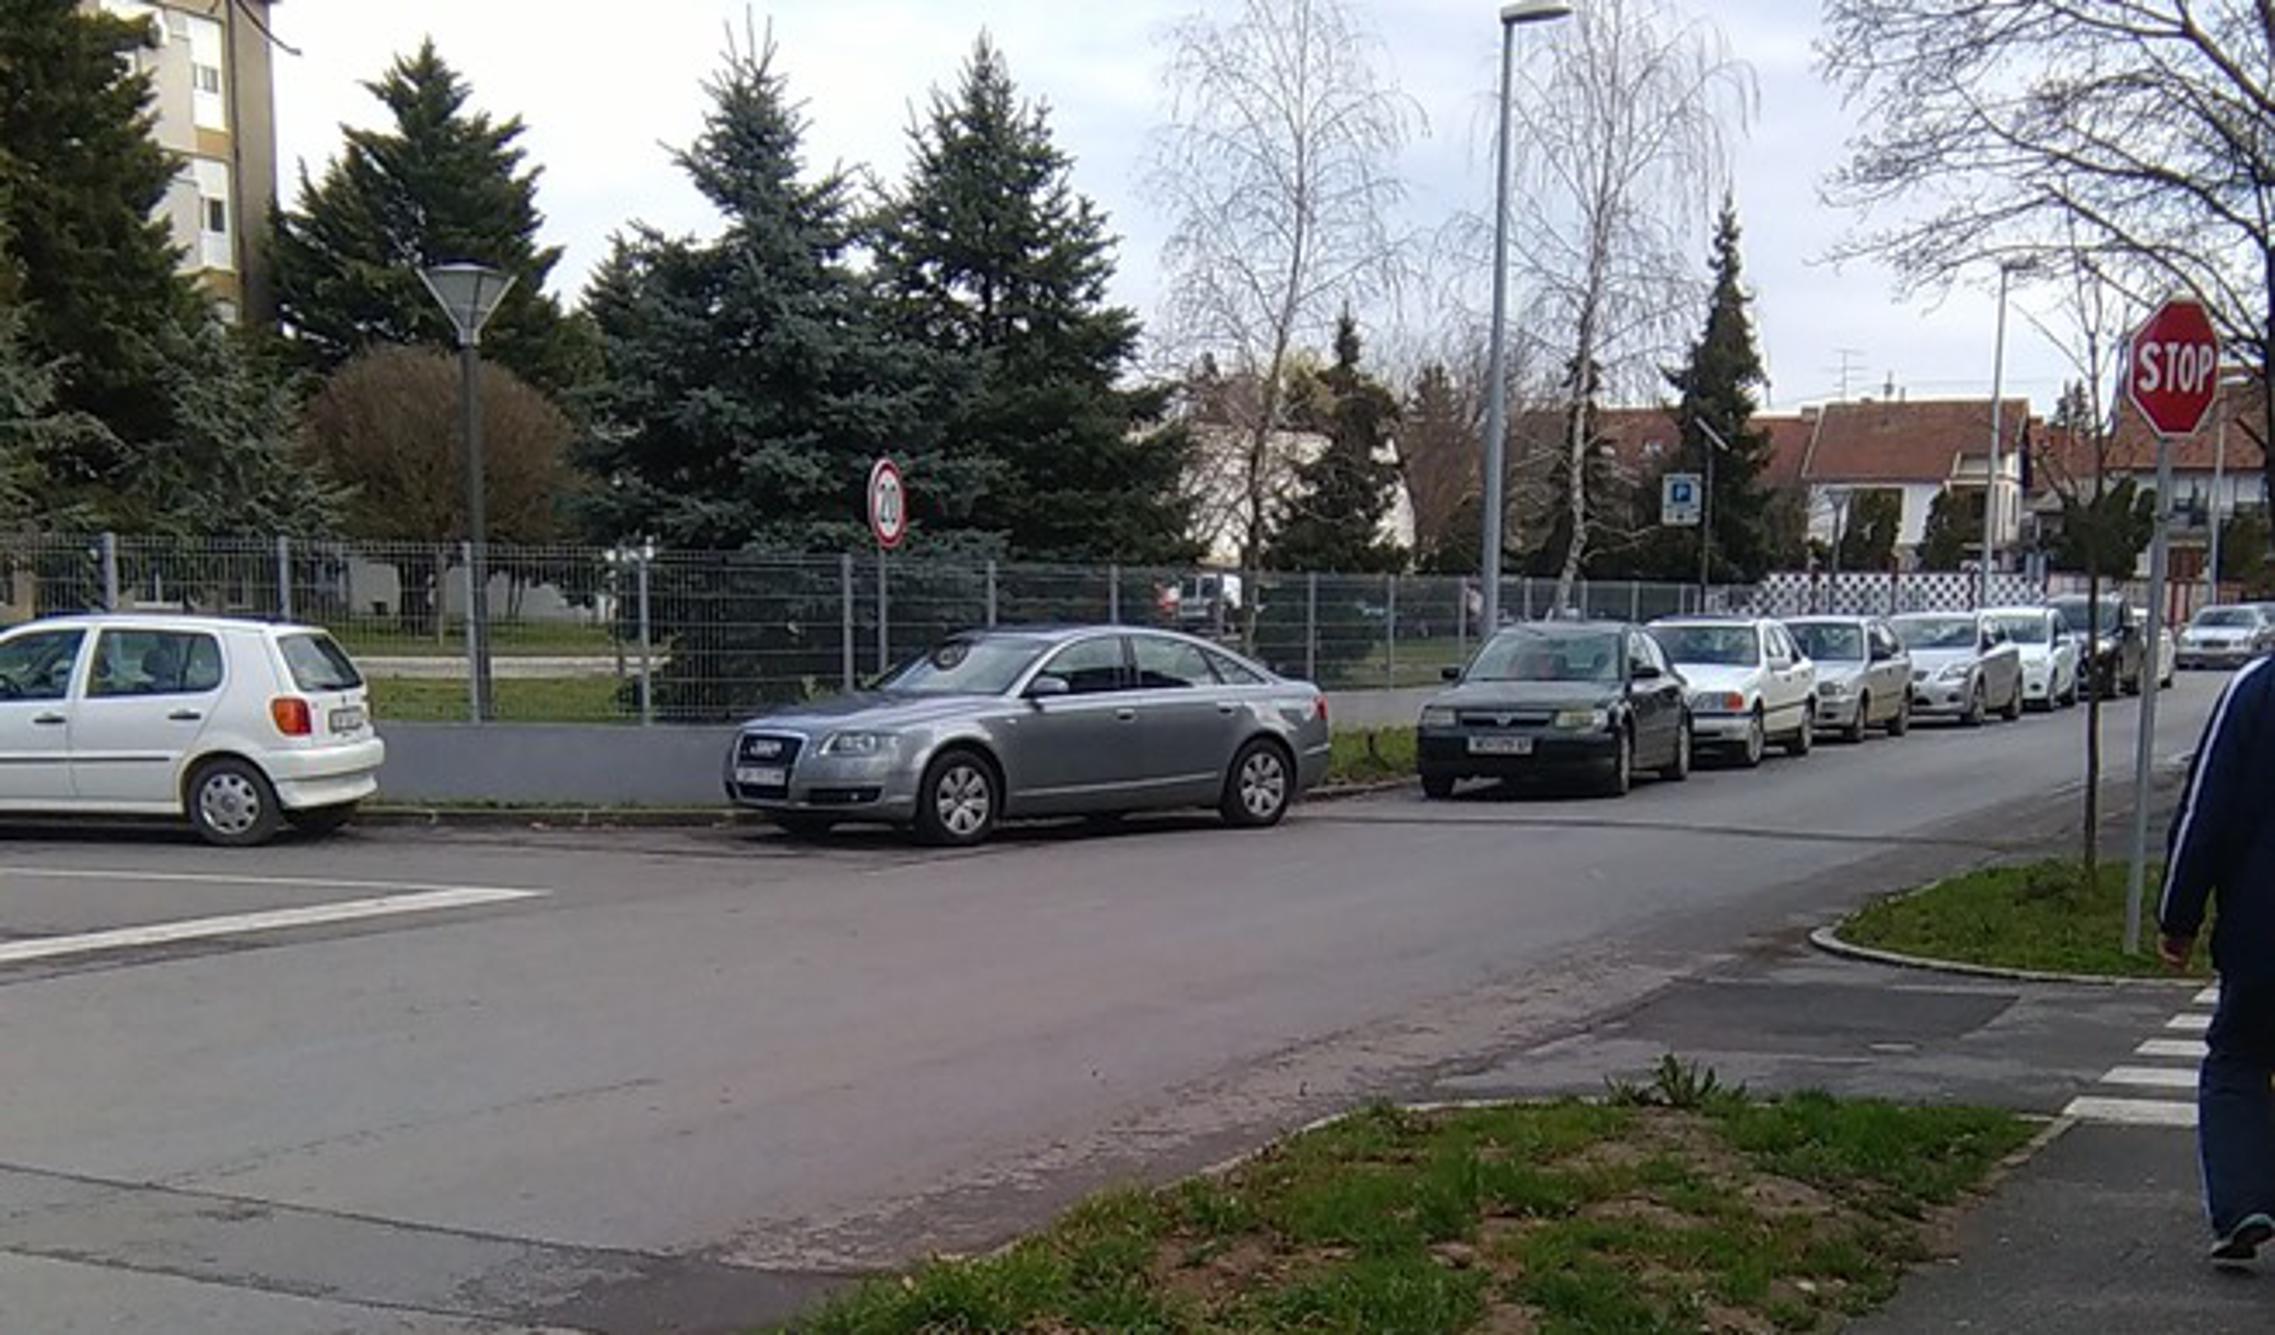 Službeno vozilo Grada Slavonskog Broda (Audi) na nedopuštenom mjestu